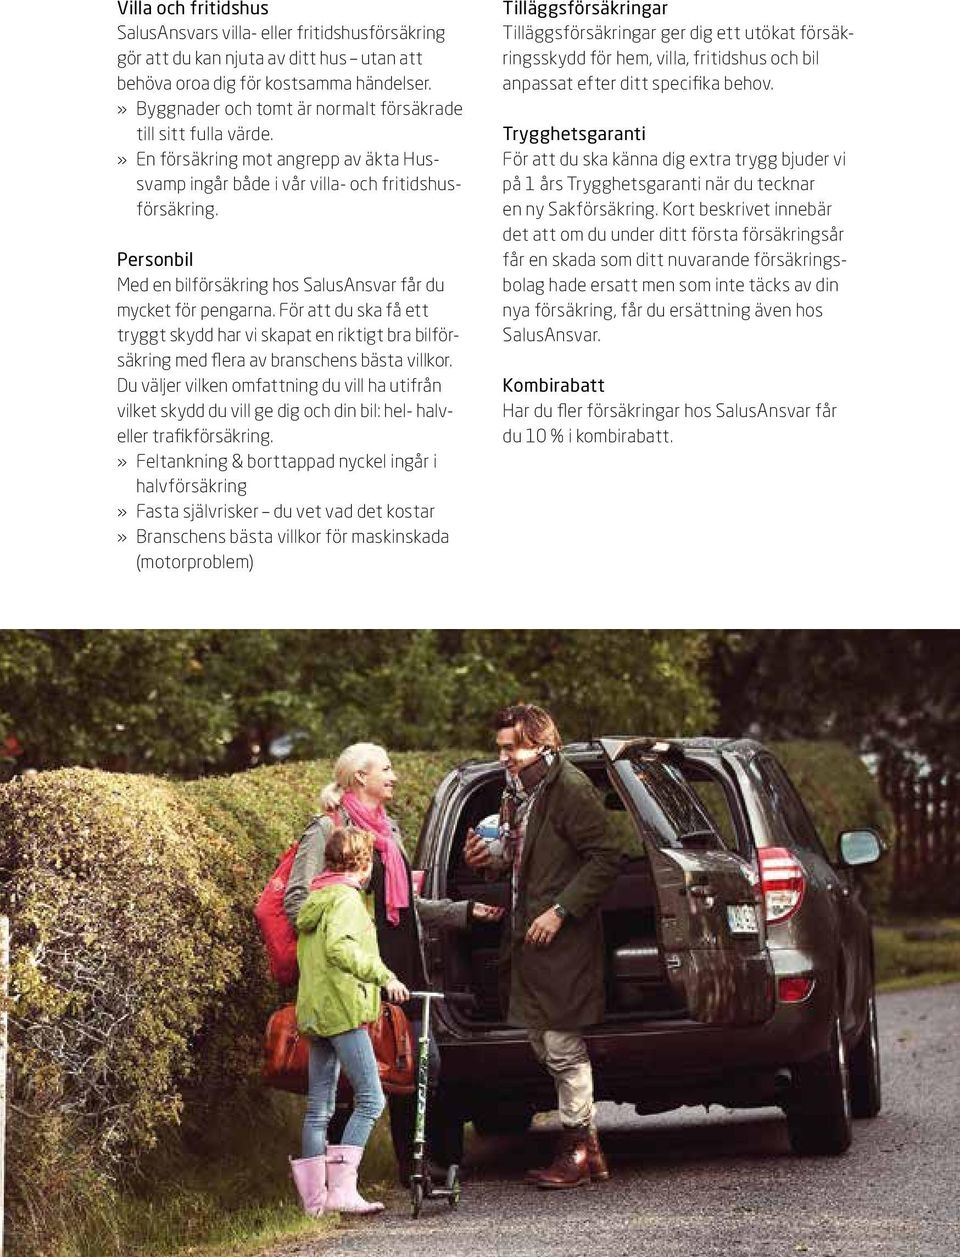 Personbil Med en bilförsäkring hos SalusAnsvar får du mycket för pengarna. För att du ska få ett tryggt skydd har vi skapat en riktigt bra bilförsäkring med flera av branschens bästa villkor.